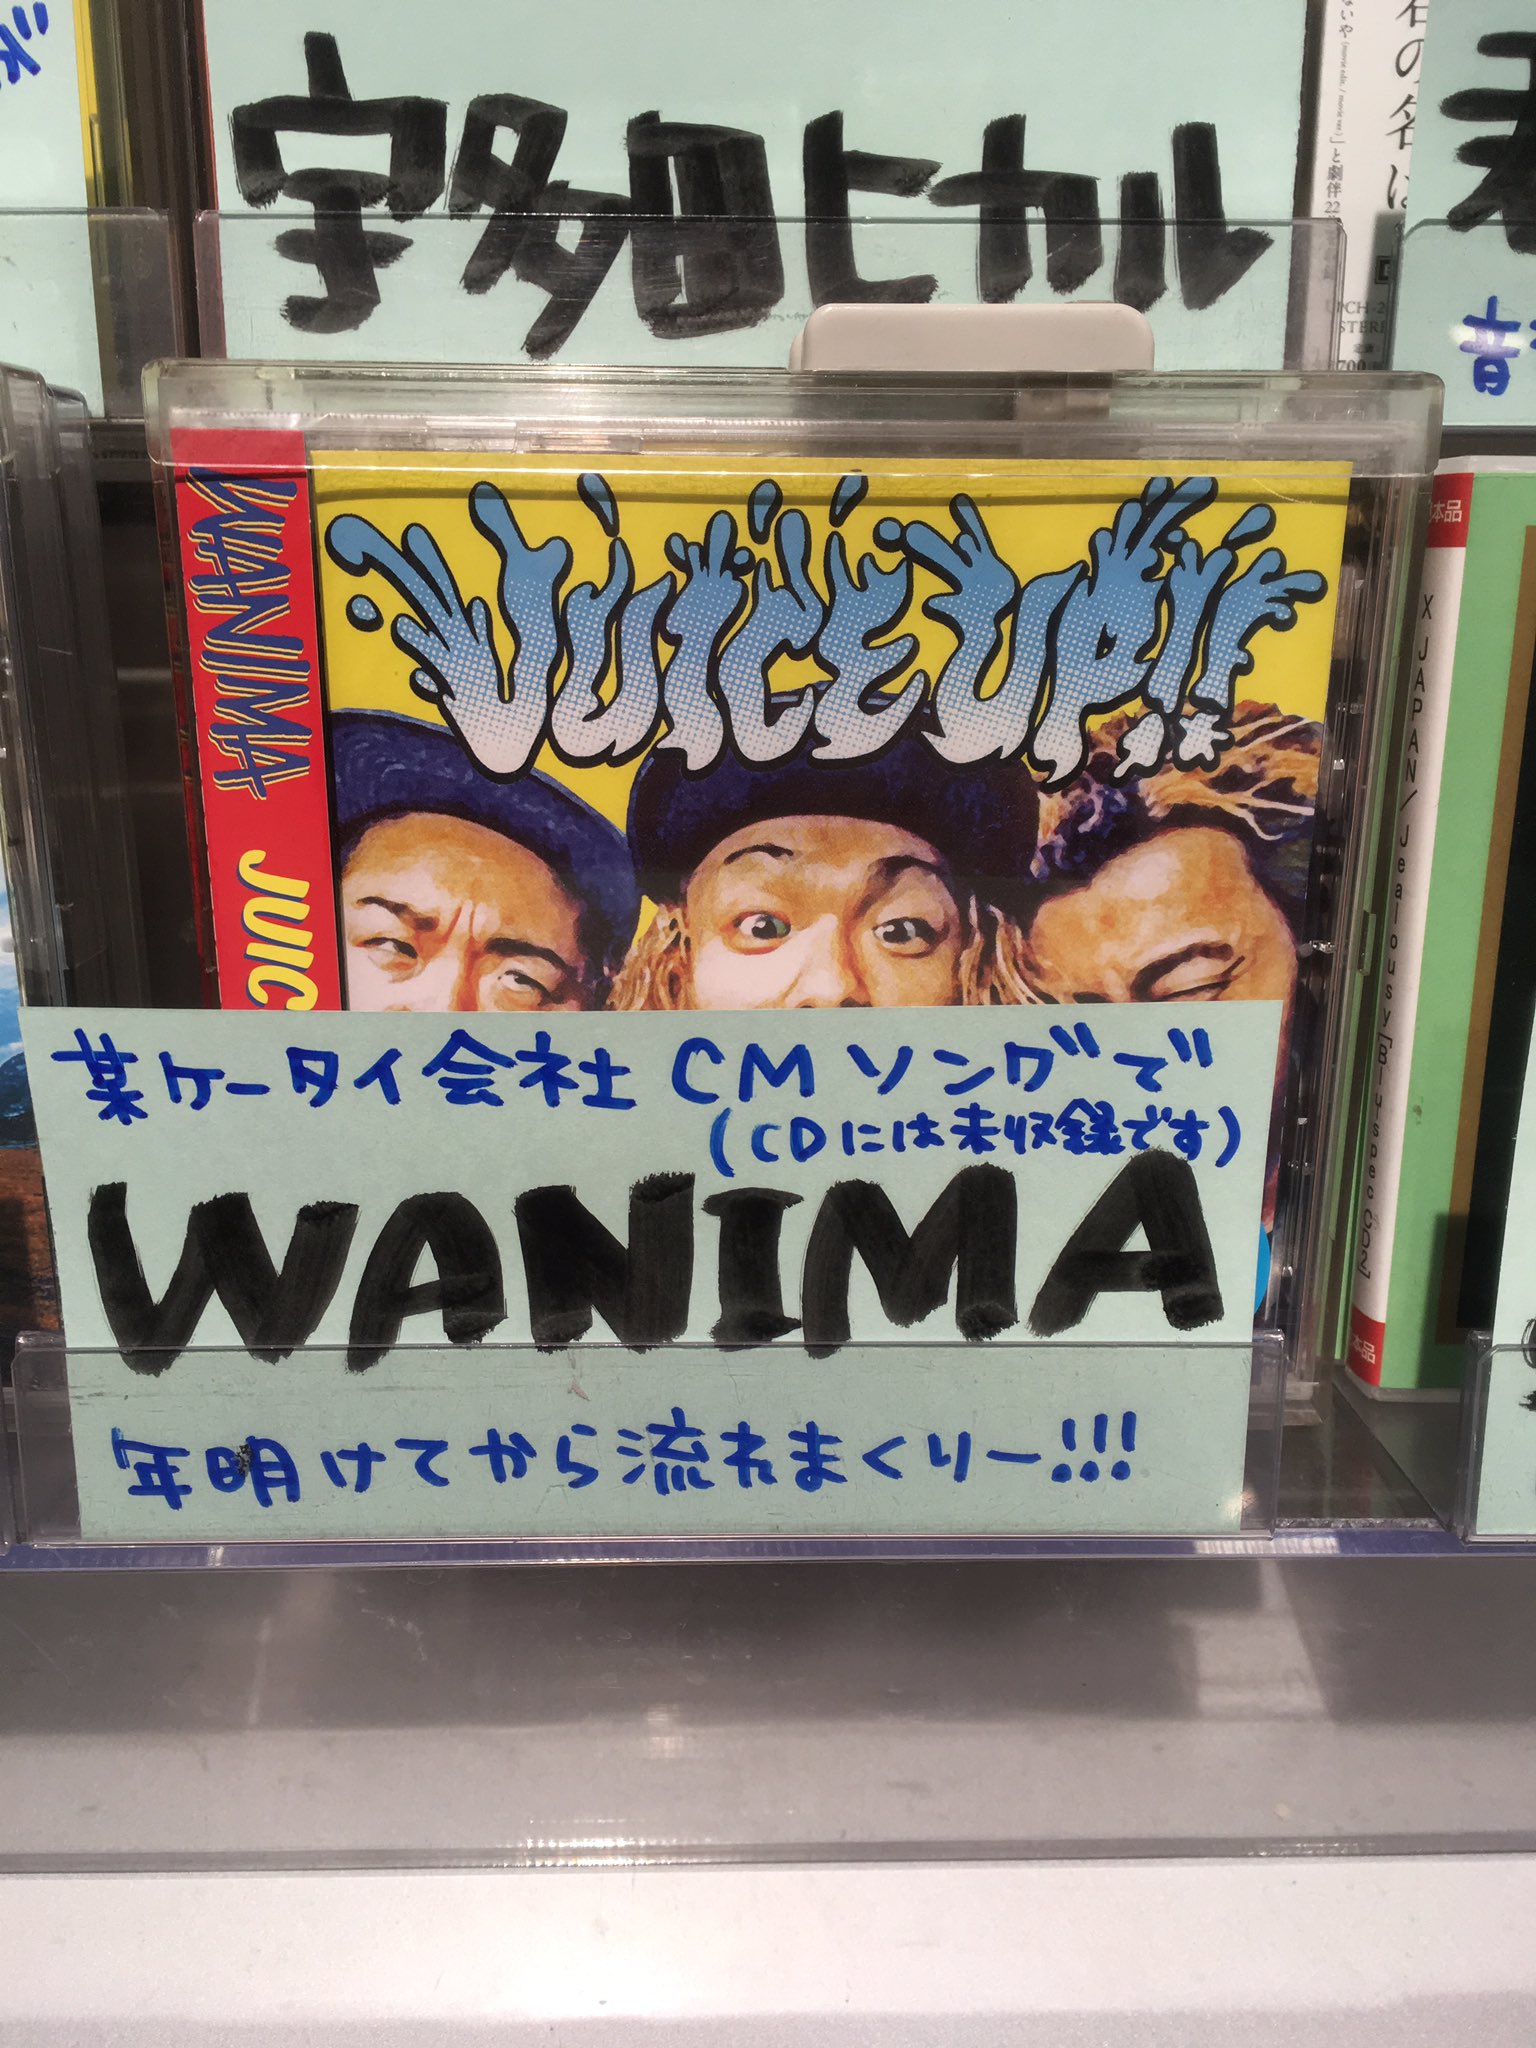 タワーレコード難波店 Wanima Auの三太郎シリーズの新cmにwanimaの曲が流れているのご存知ですかー その名も やってみよう ともに やってみようー 13日からの配信限定ですが Cd化が待ち遠しい Wanima T Co